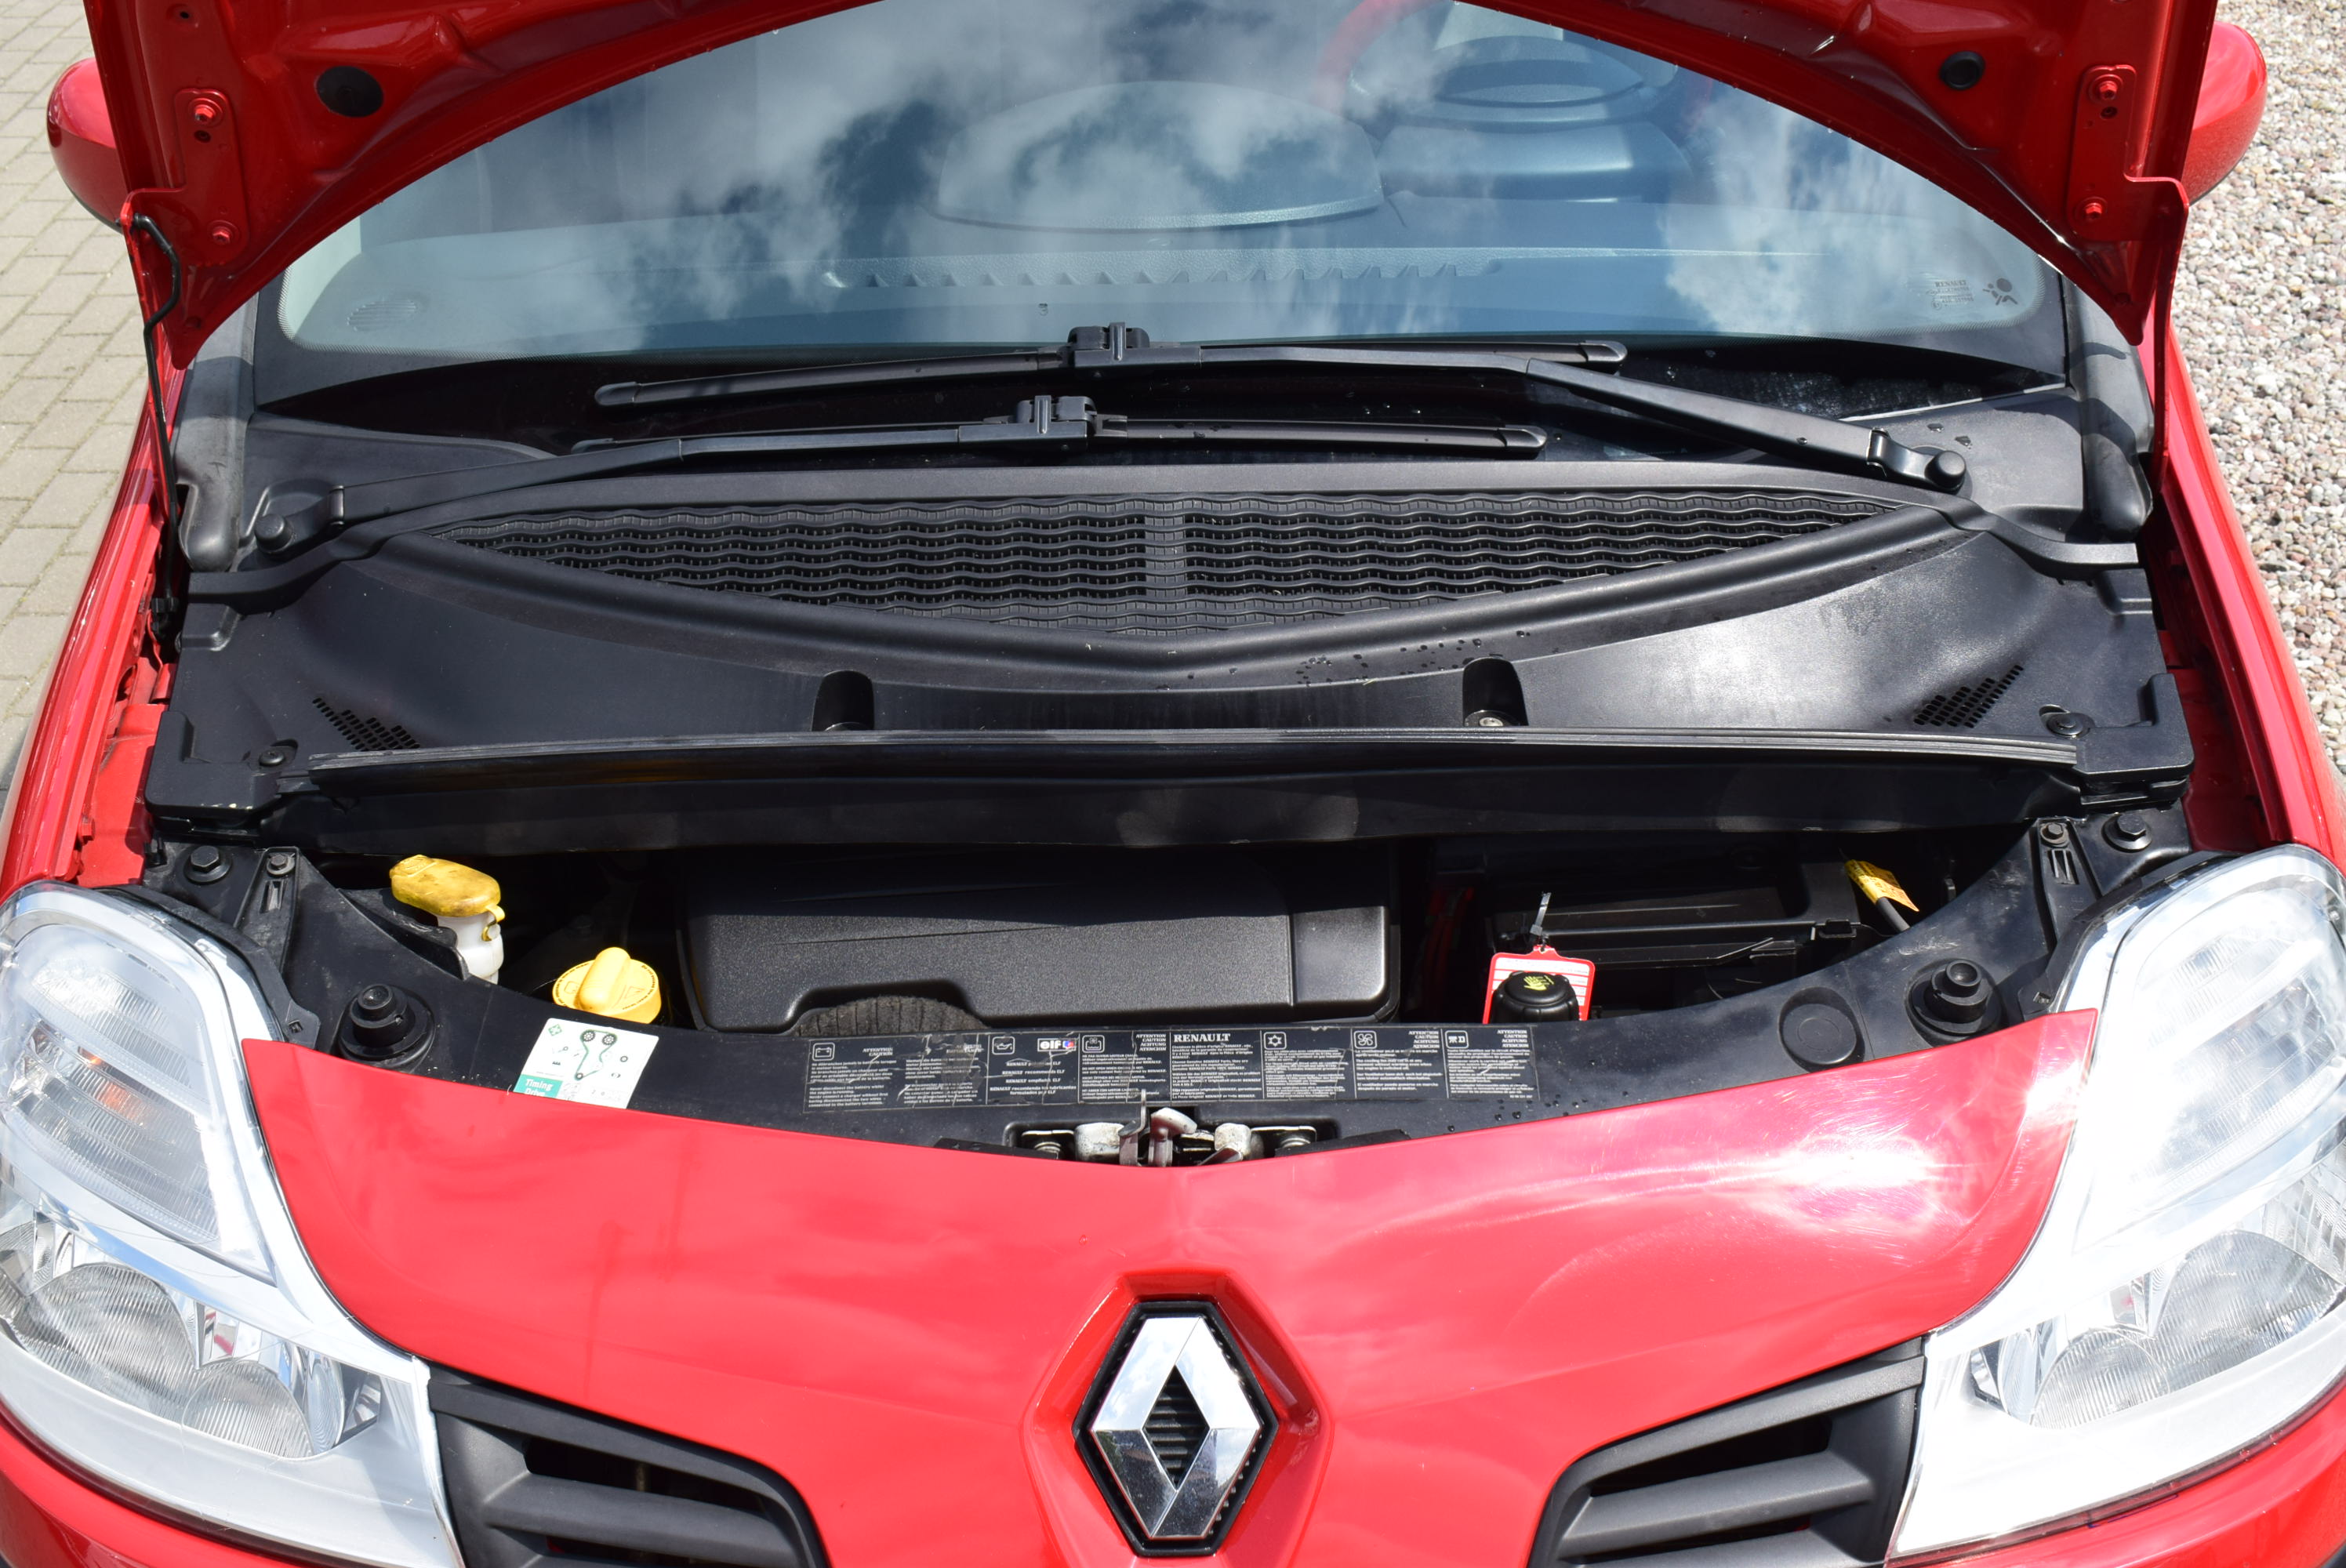 Renault Modus 1.1 Benzyna, Zarejestrowany, Opłacony, Zadbany, Kamera cofania, Klima, Rok Gwarancji full